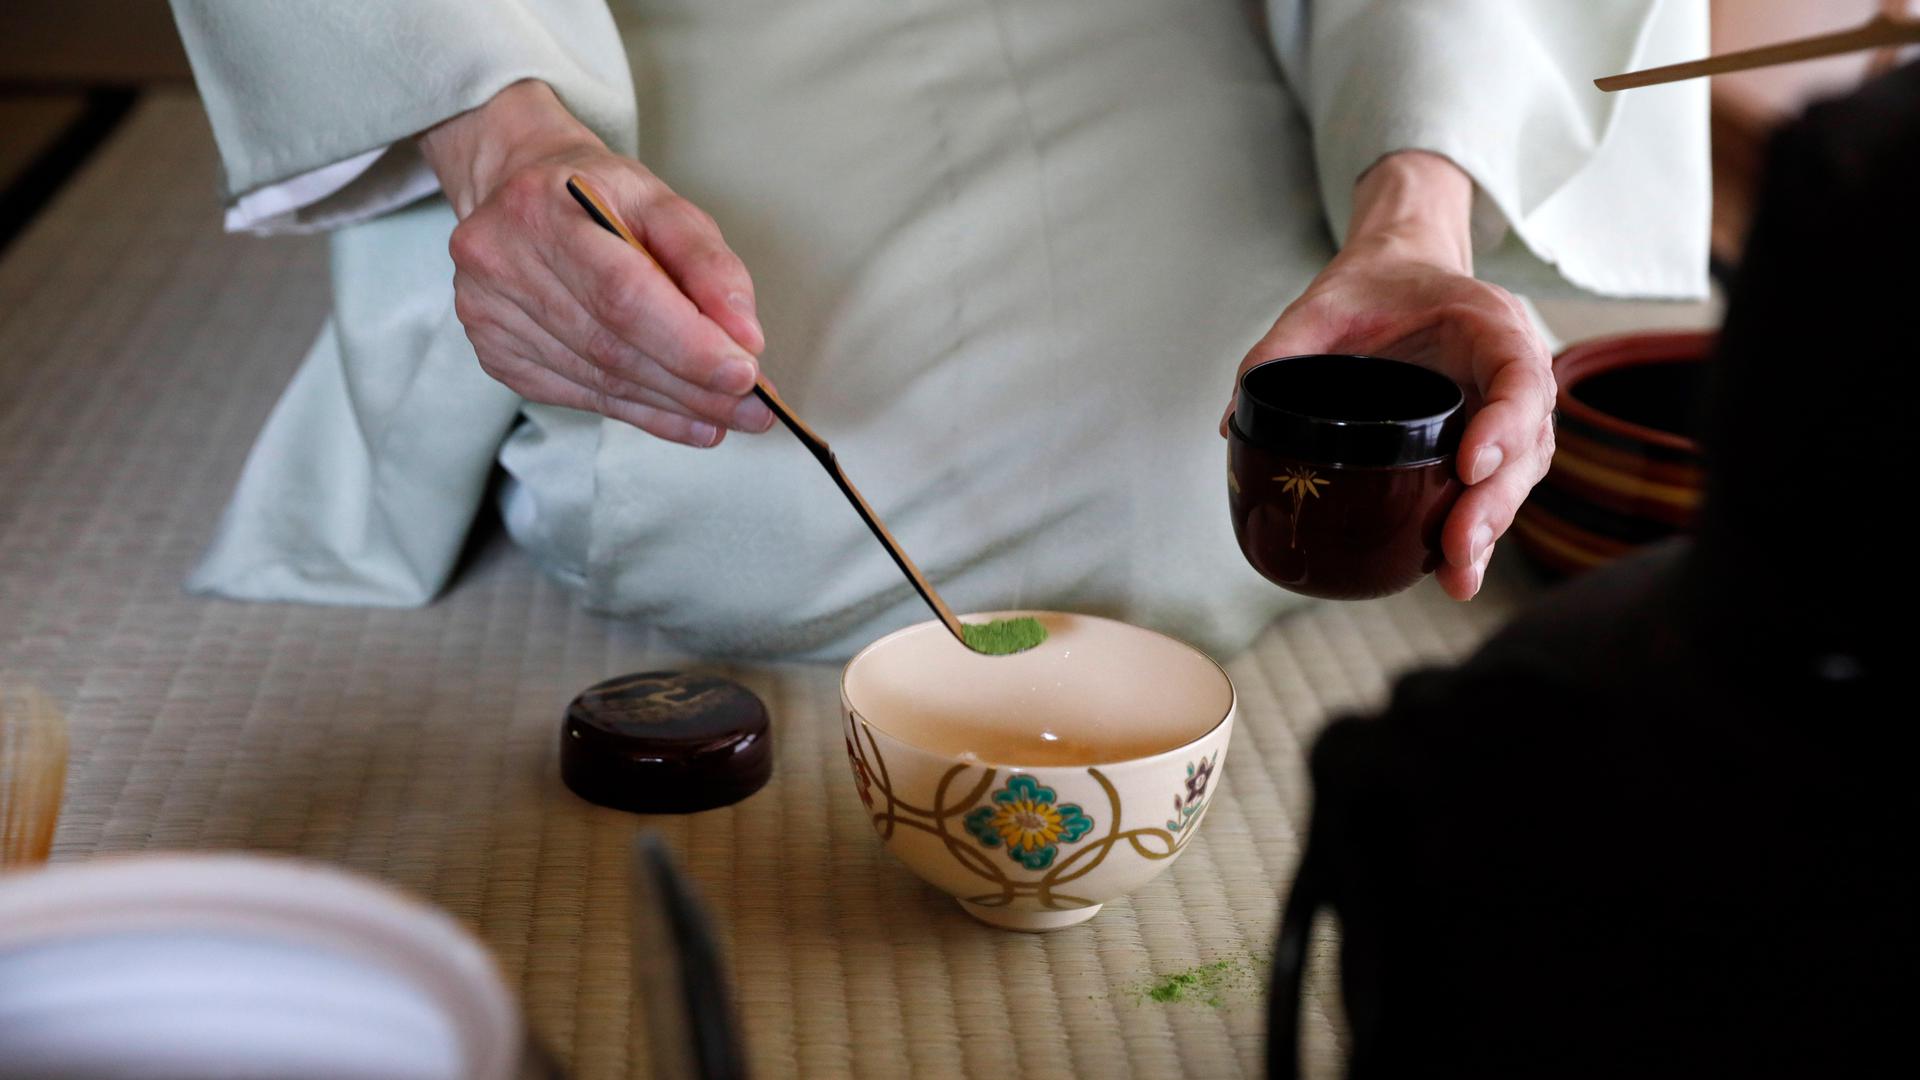 Japanische Teezeremonie: Mit edlem Besteck wird das grüne Matcha-Pulver in die Teeschale gefüllt. Im japanischen Teehaus im Karlsruher Stadtgarten wird das Ritual regelmäßig praktiziert.